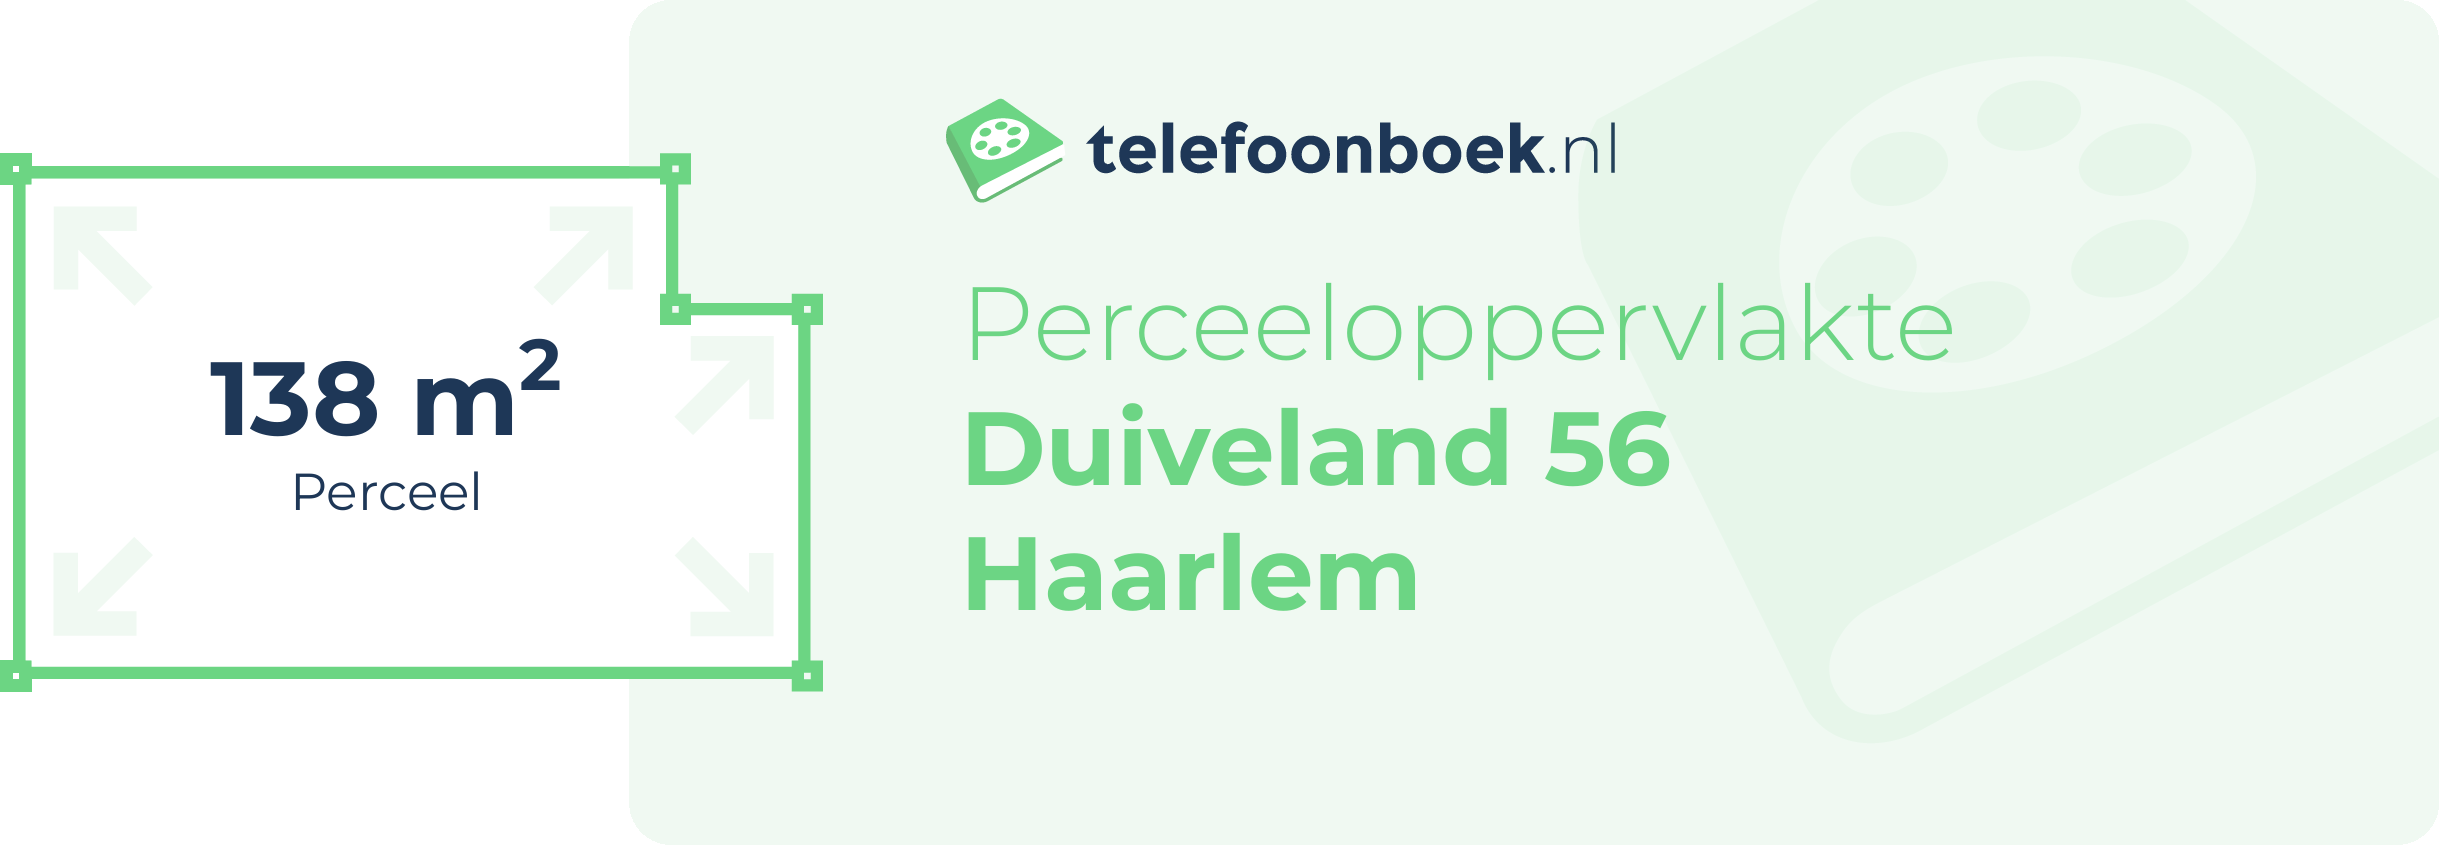 Perceeloppervlakte Duiveland 56 Haarlem